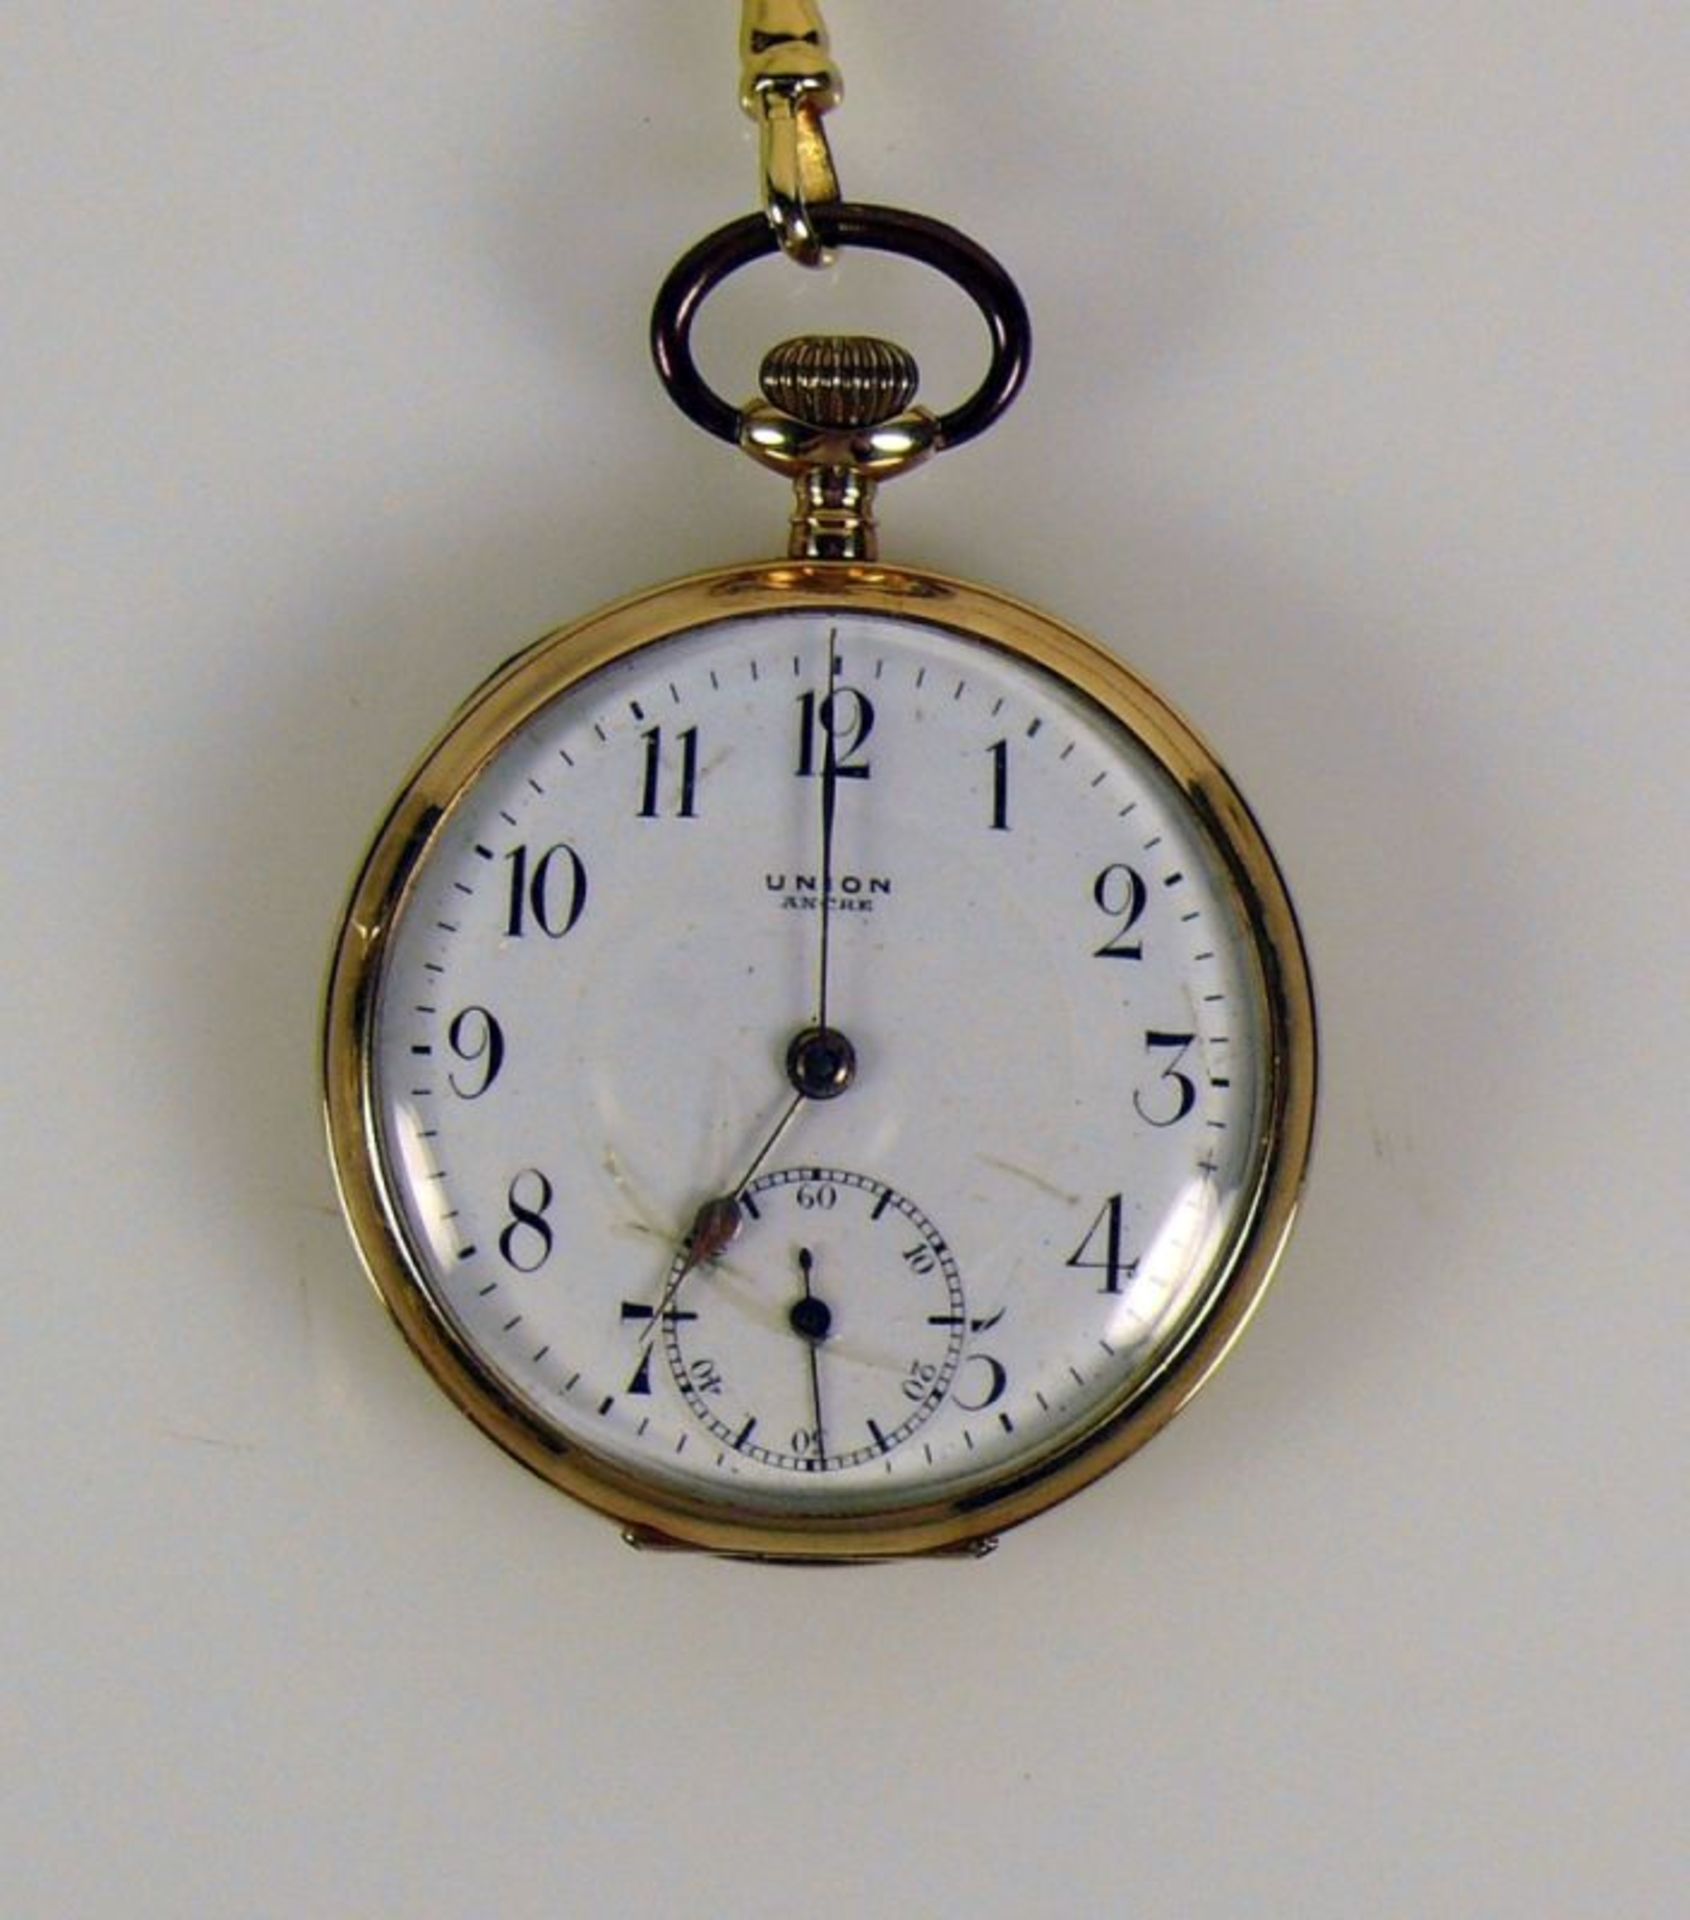 Taschenuhr mit Uhrenkette; jeweils 14ct GG; Werk und Ziffernblatt sign: UNION; Emailziffernblatt mit - Bild 2 aus 3